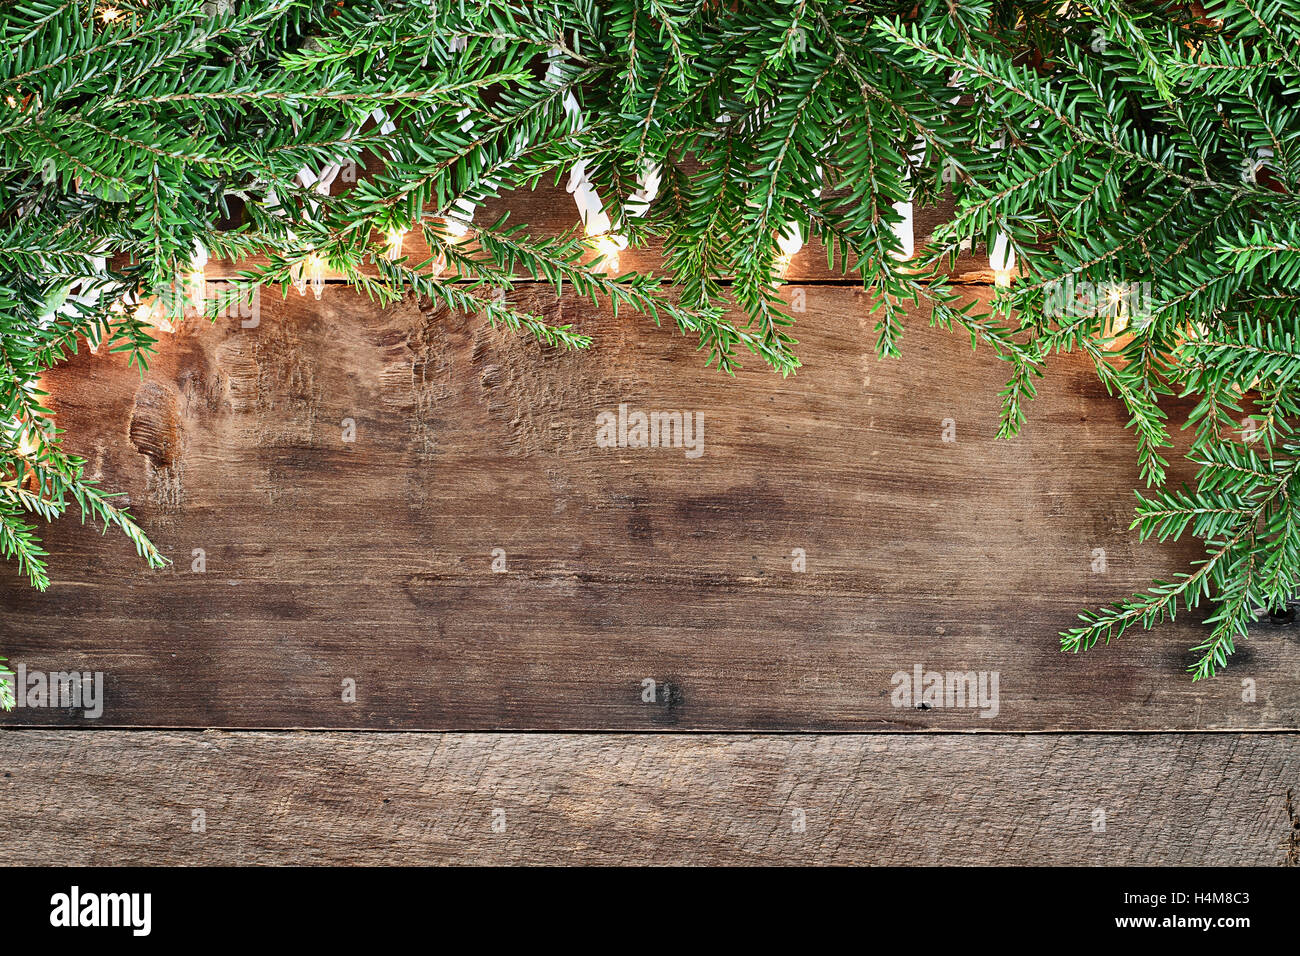 Albero di natale di rami di pino e luci decorative su un sfondo rustico di legno del granaio. Immagine ripresa dalla testa. Foto Stock